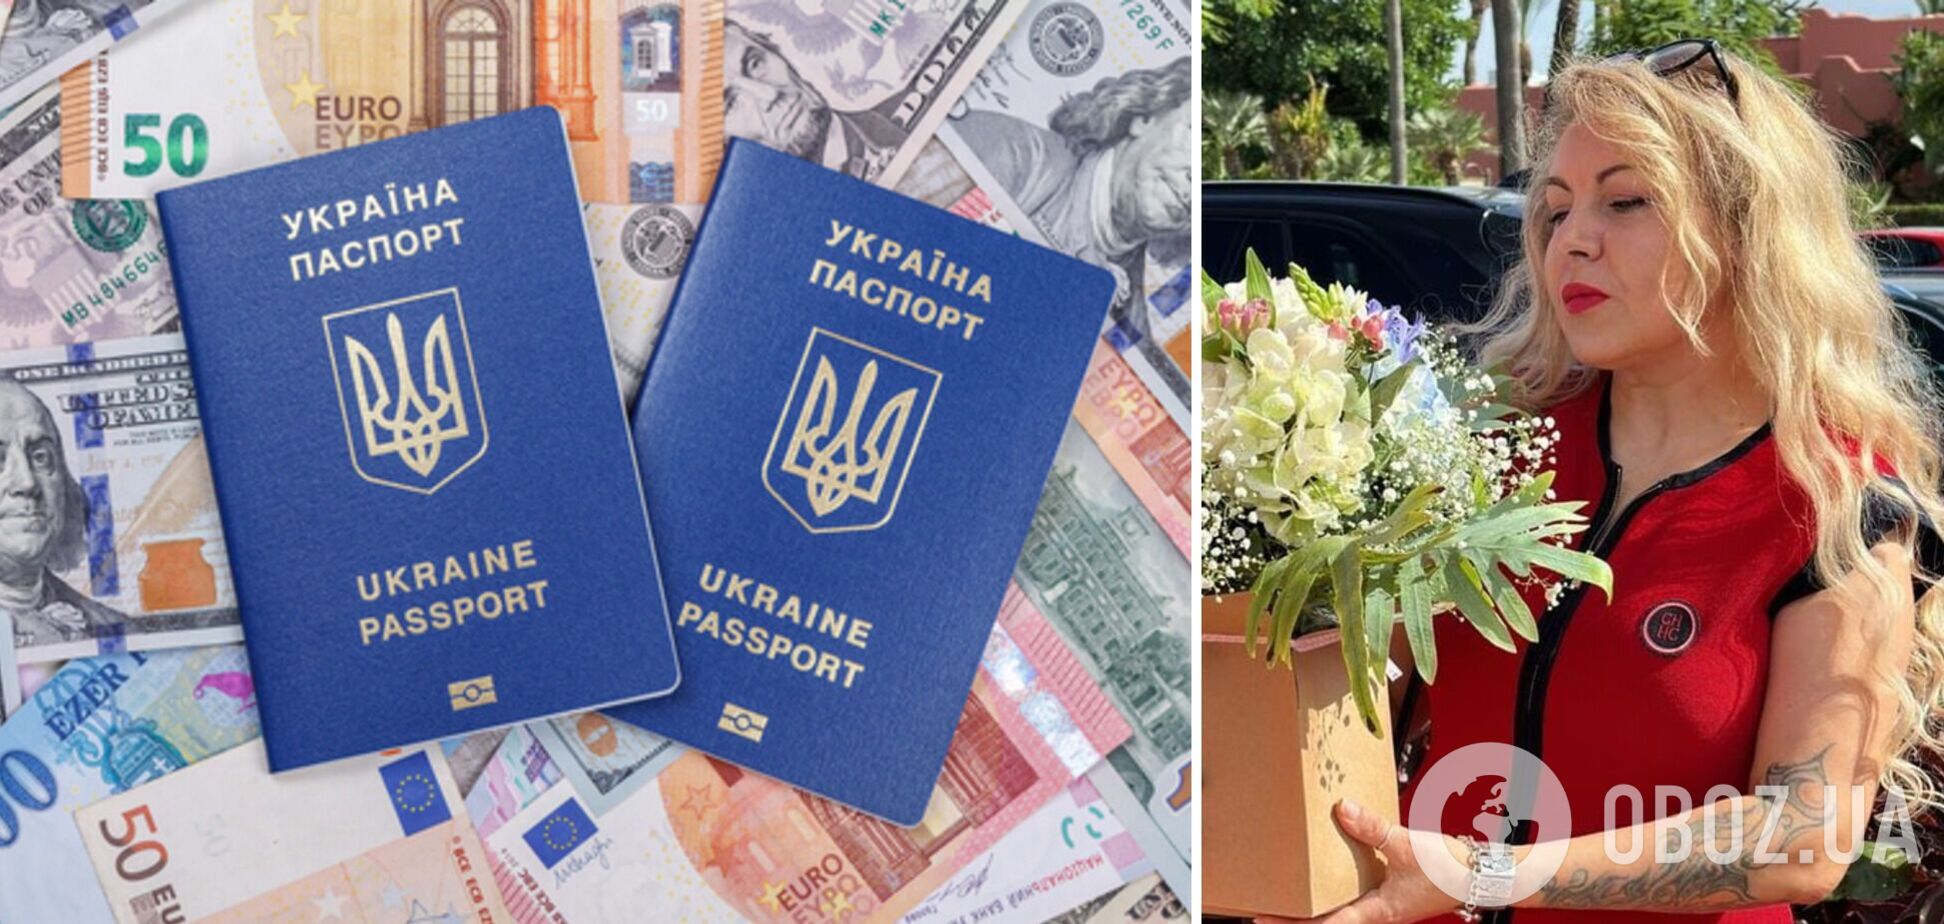 Певица Юнакова перечислила профессии для украинцев за границей, где 'можно заработать копеечку'